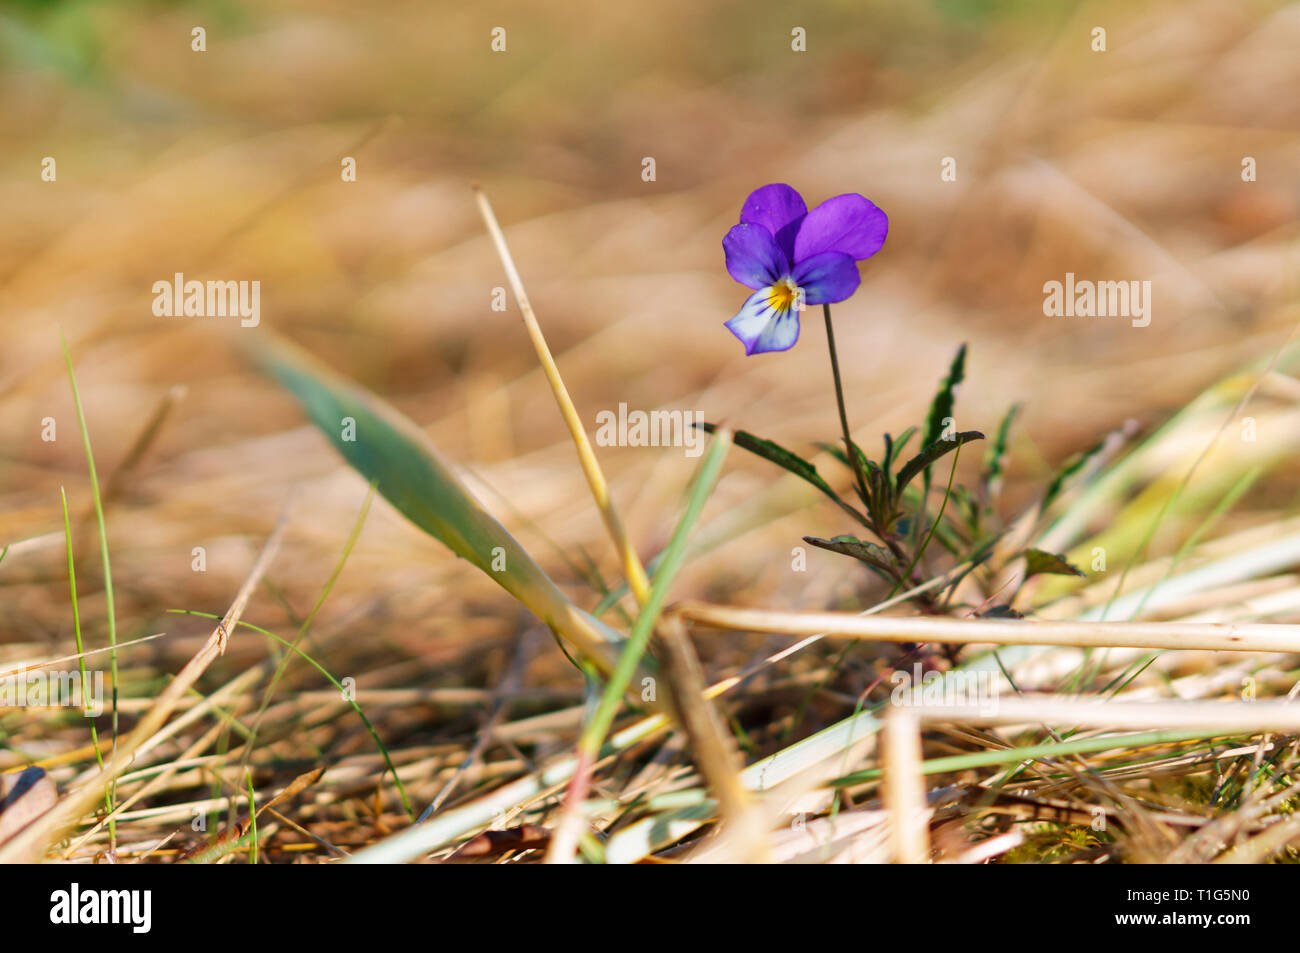 Petite fleur bleue, violette sauvage sur fond orange Photo Stock - Alamy